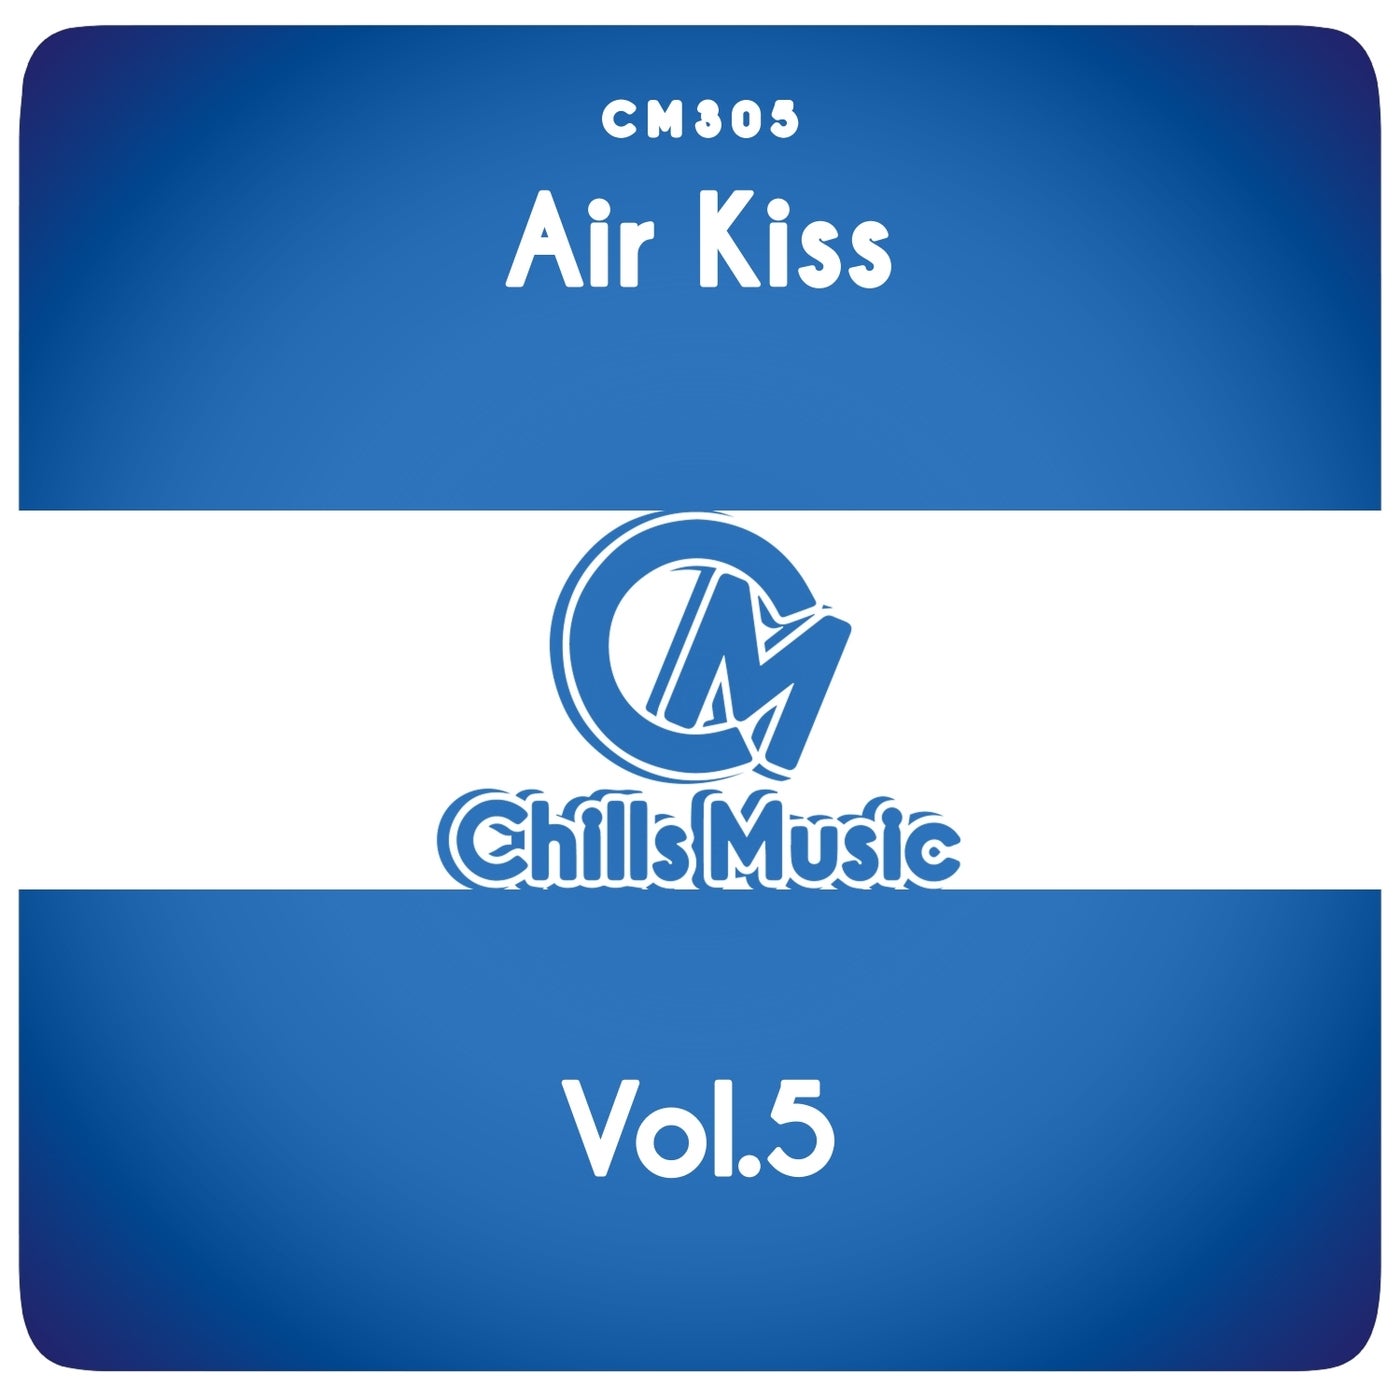 Air Kiss, Vol.5